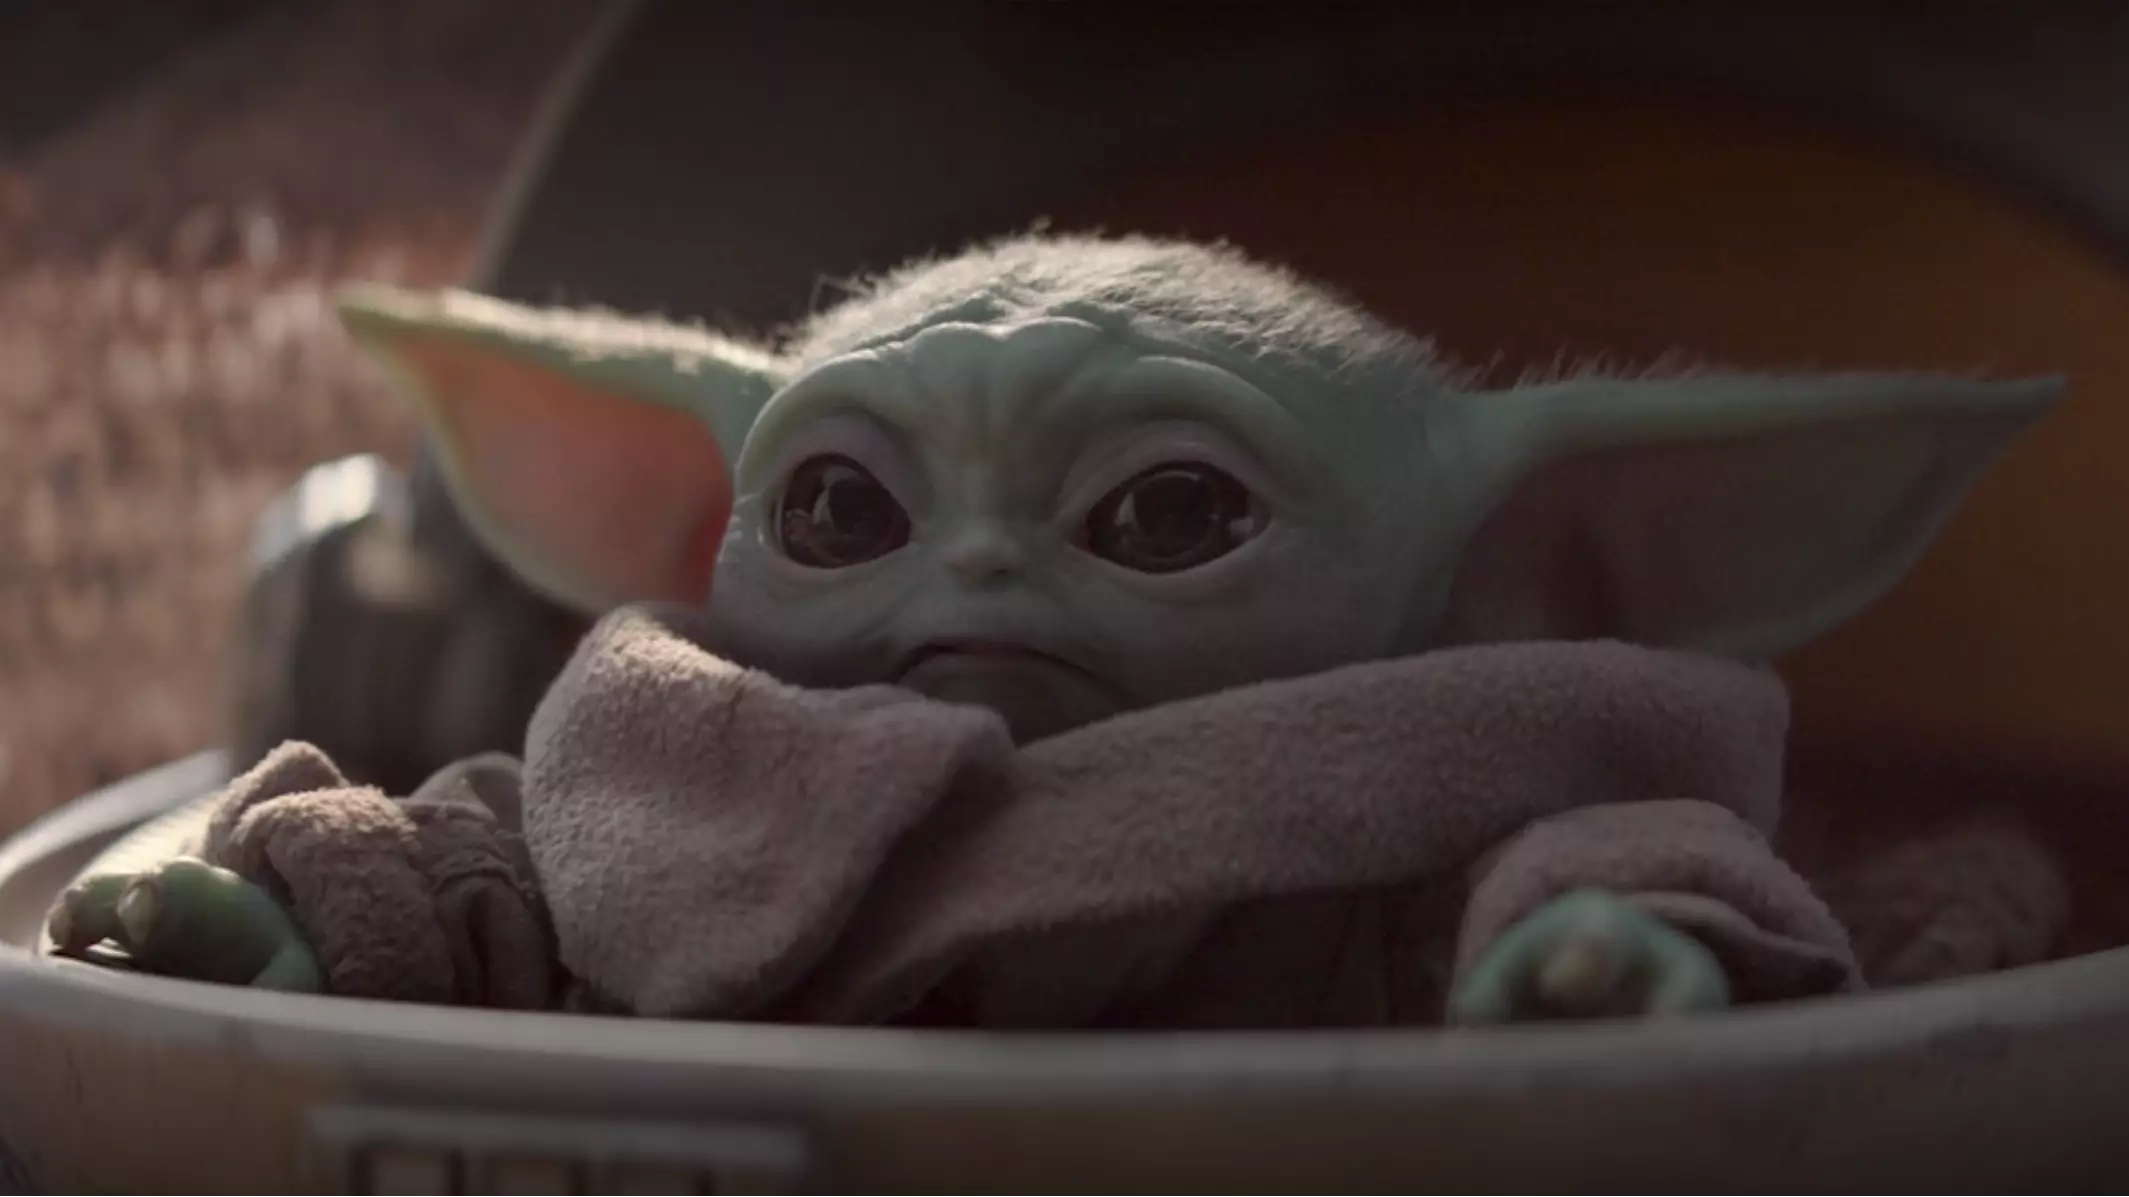 Fancy getting Baby Yoda in LEGO form?